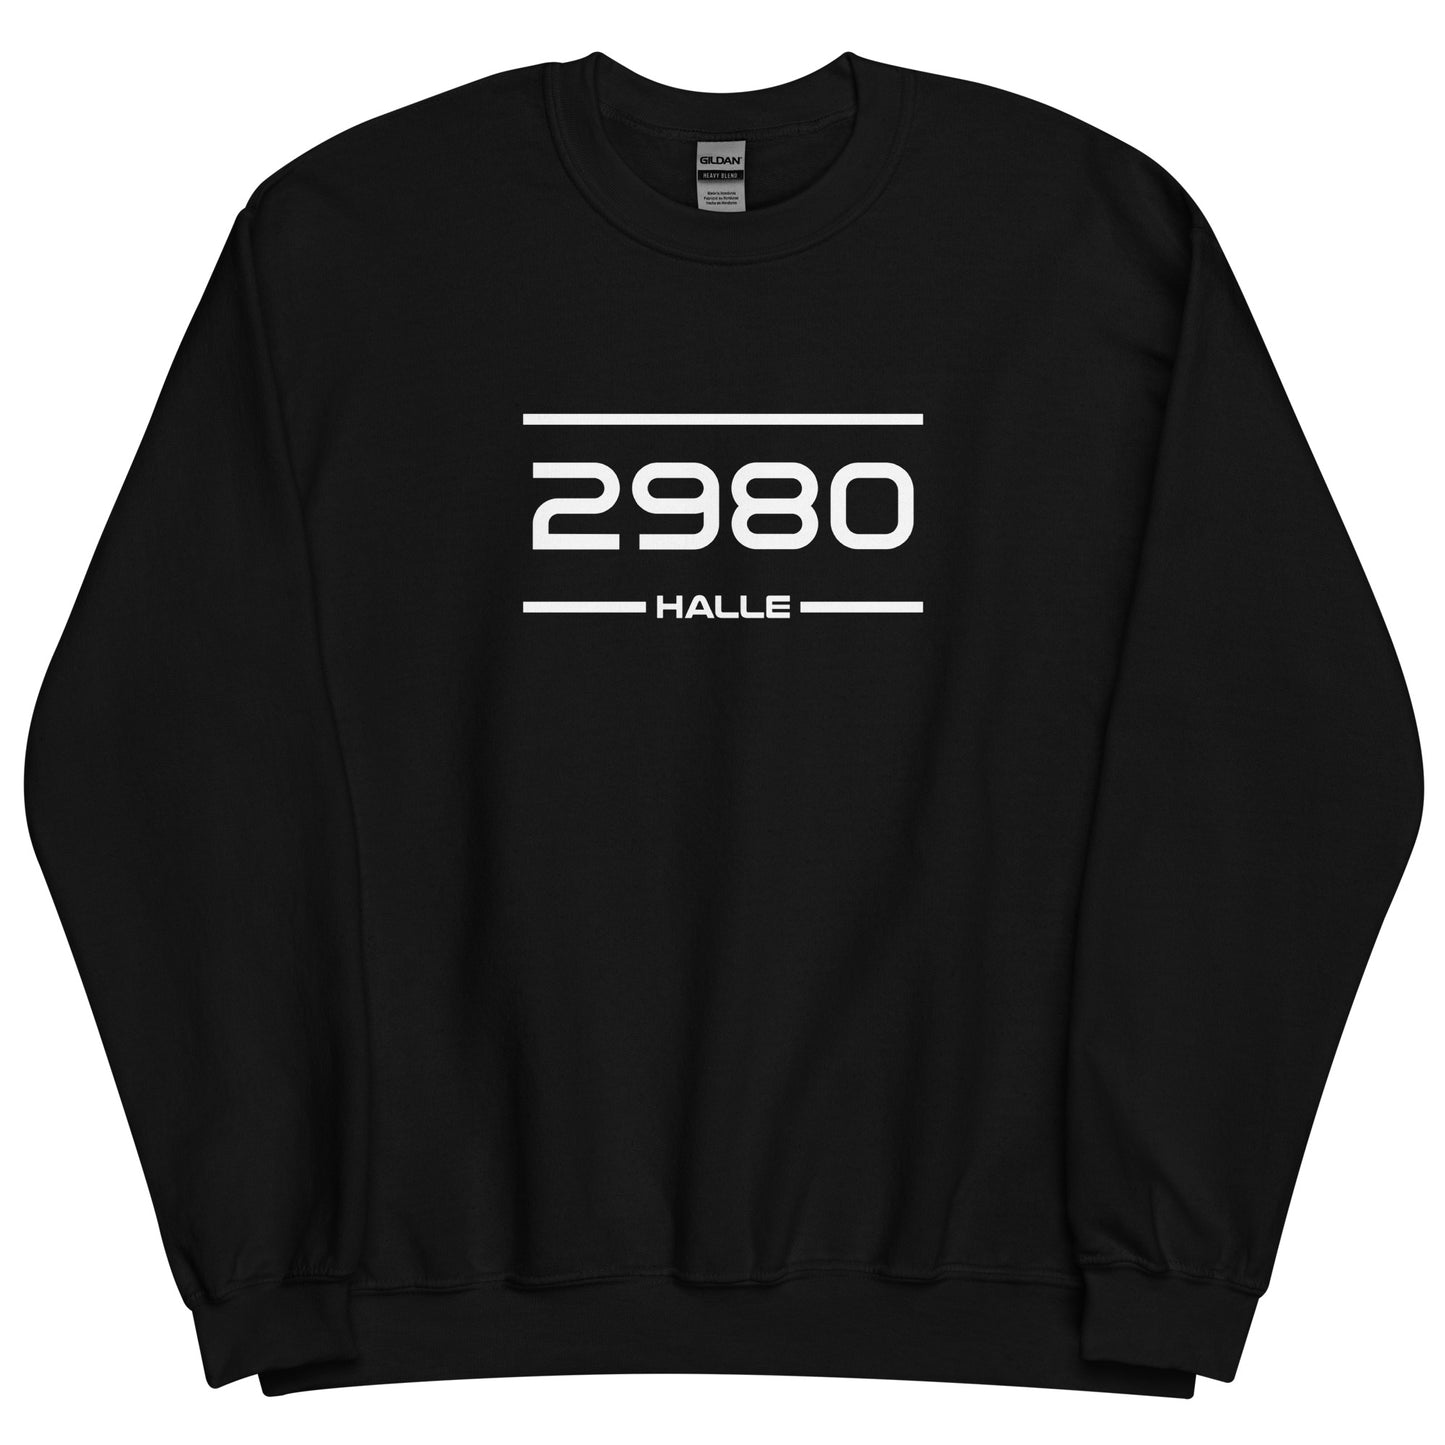 Sweater - 2980 - Halle (M/V)